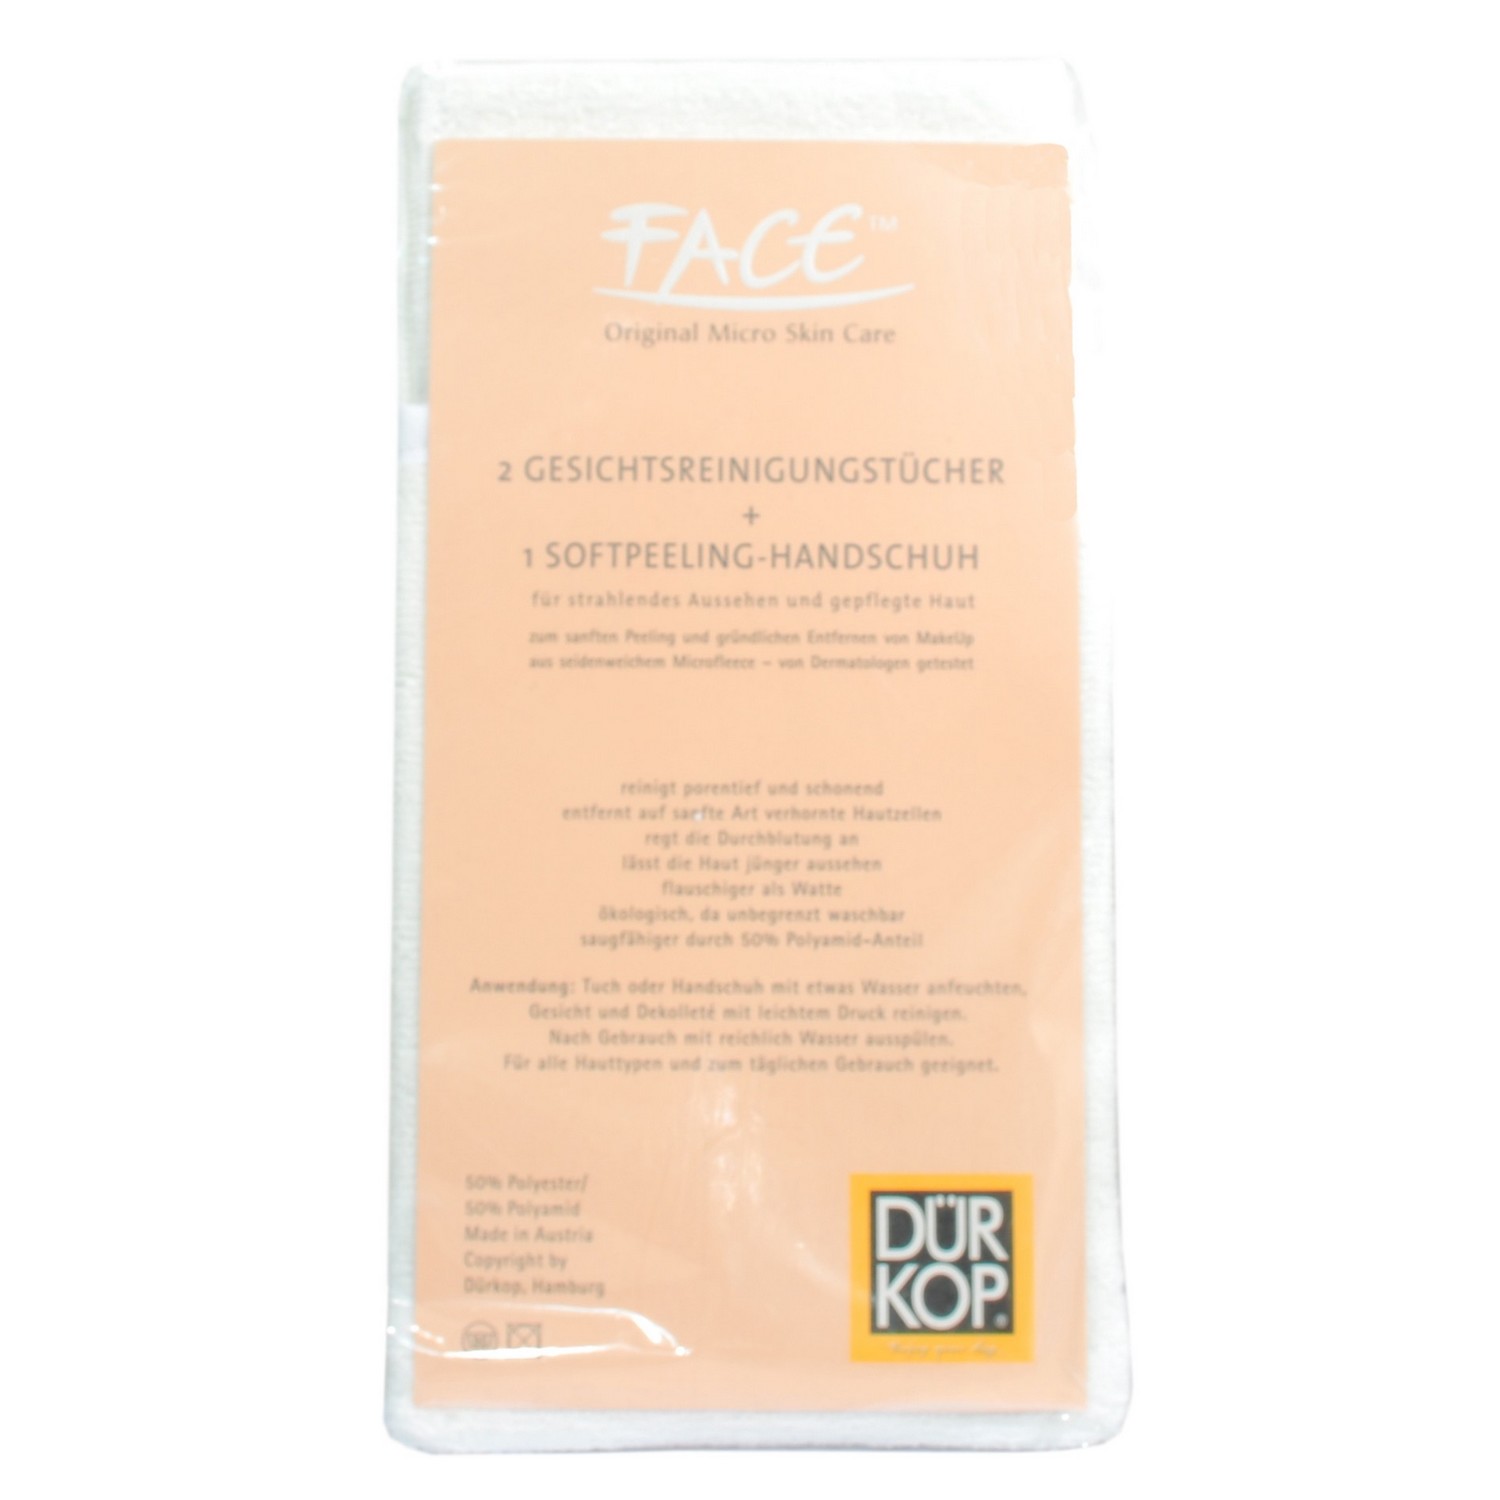 Face Original Micro Skin Care 2 Gesichtsreinigungstücher inkl. Softpeeling-Handschuh 50g